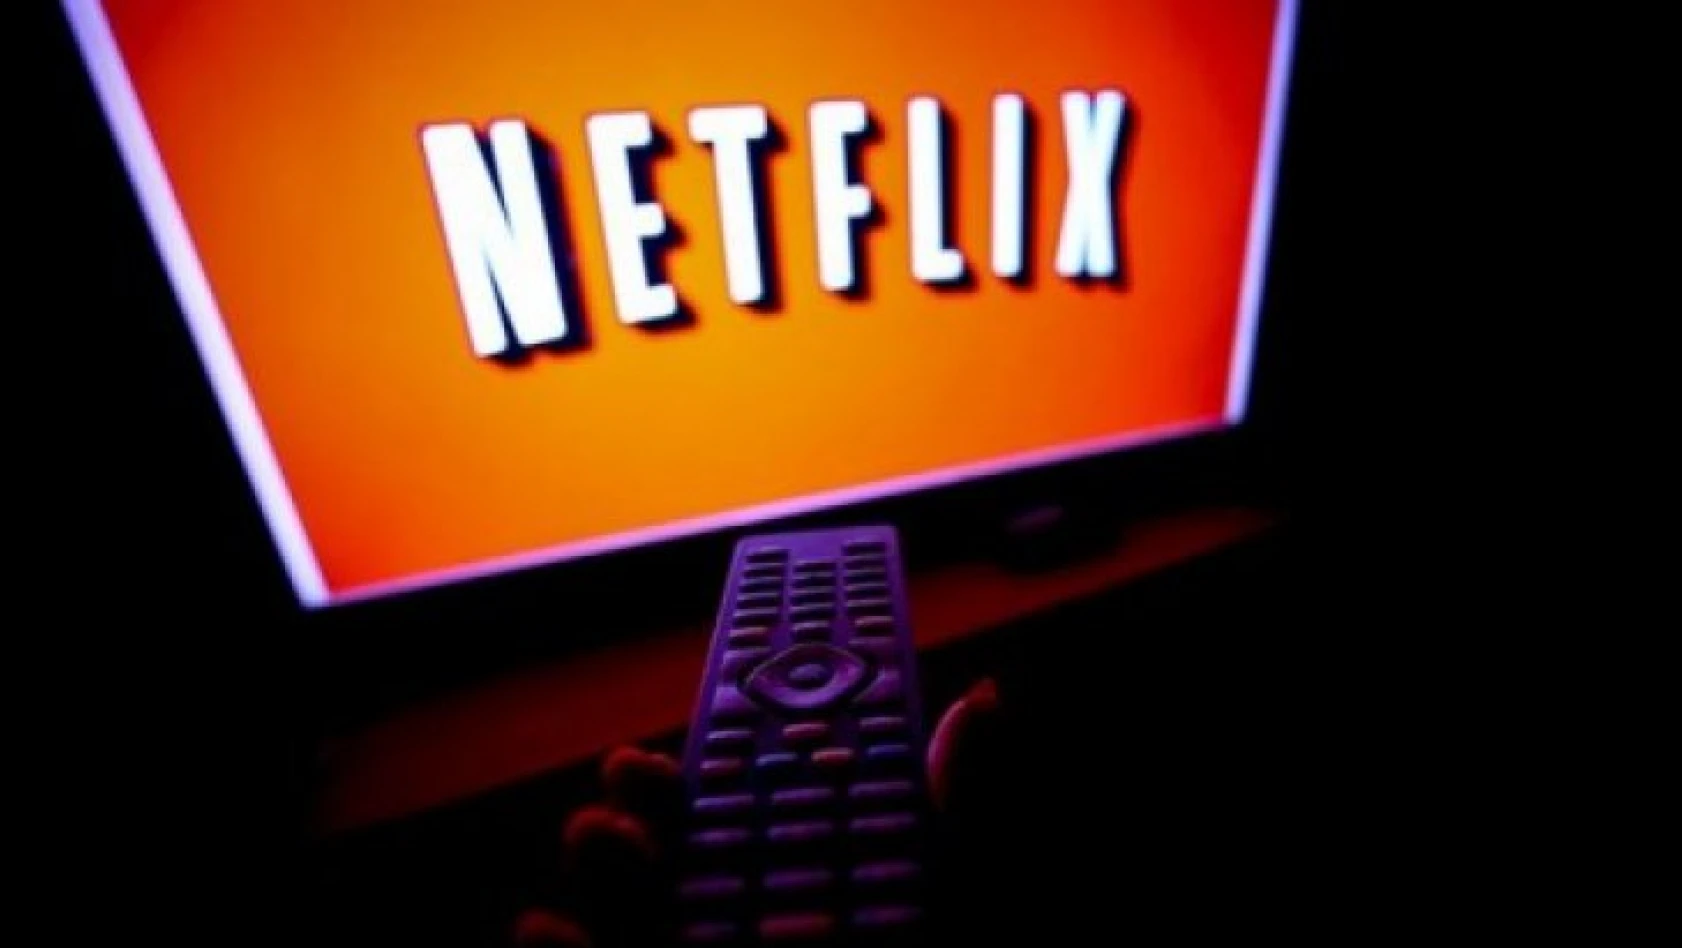 Netflix'ten ebeveyn kontrollerini güçlendirme kararı